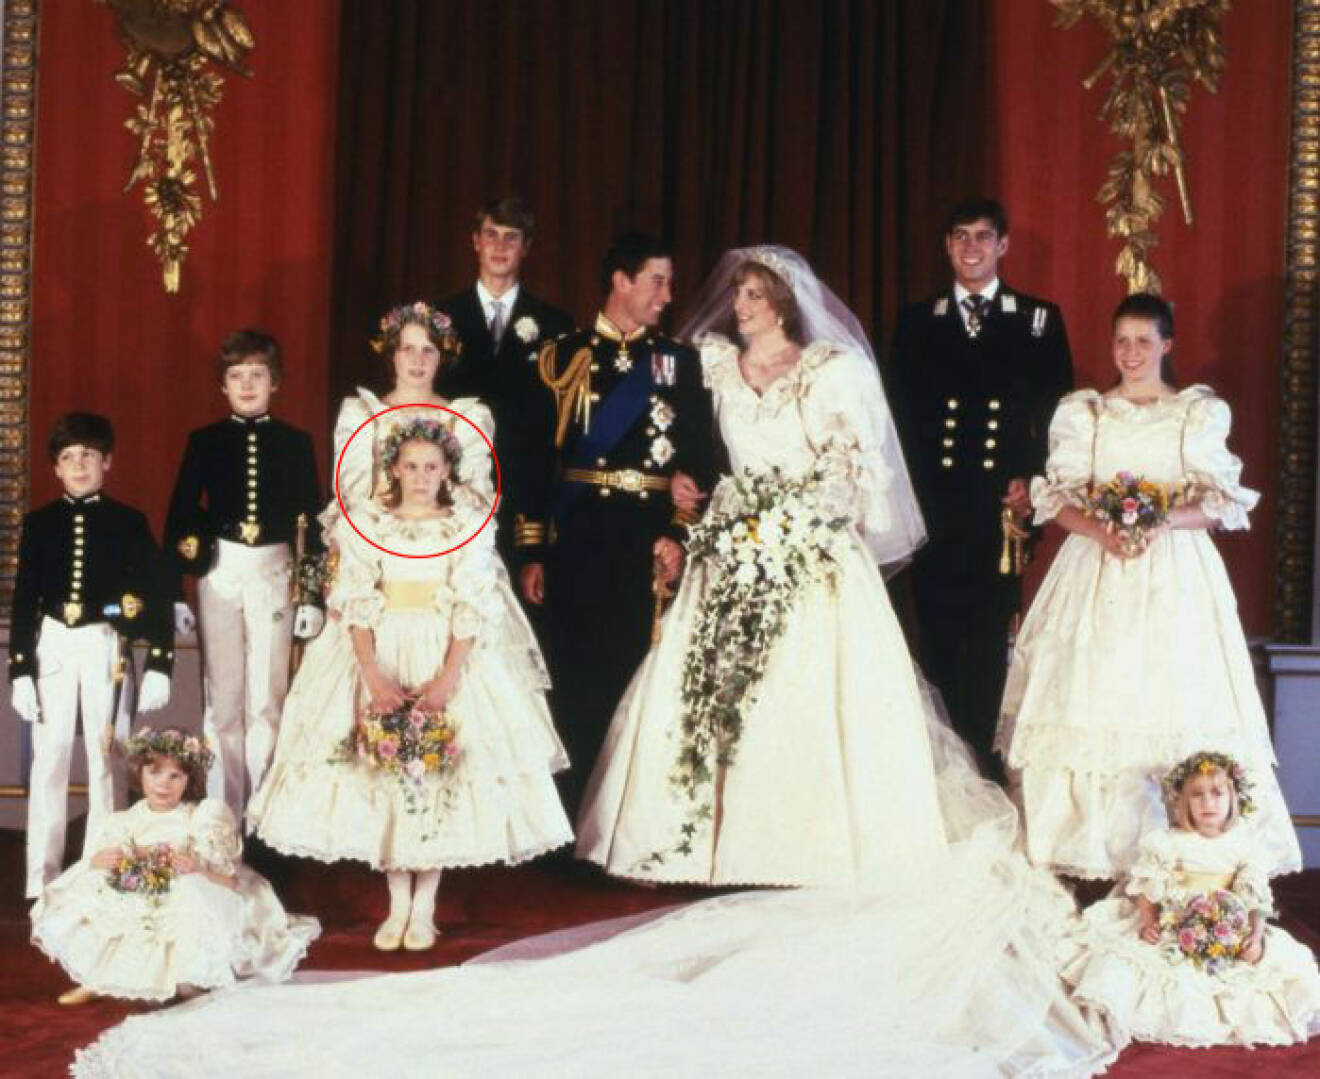 Dianas bröllop den 29 juli 1981. Sarah-Jane står längst fram till vänster.